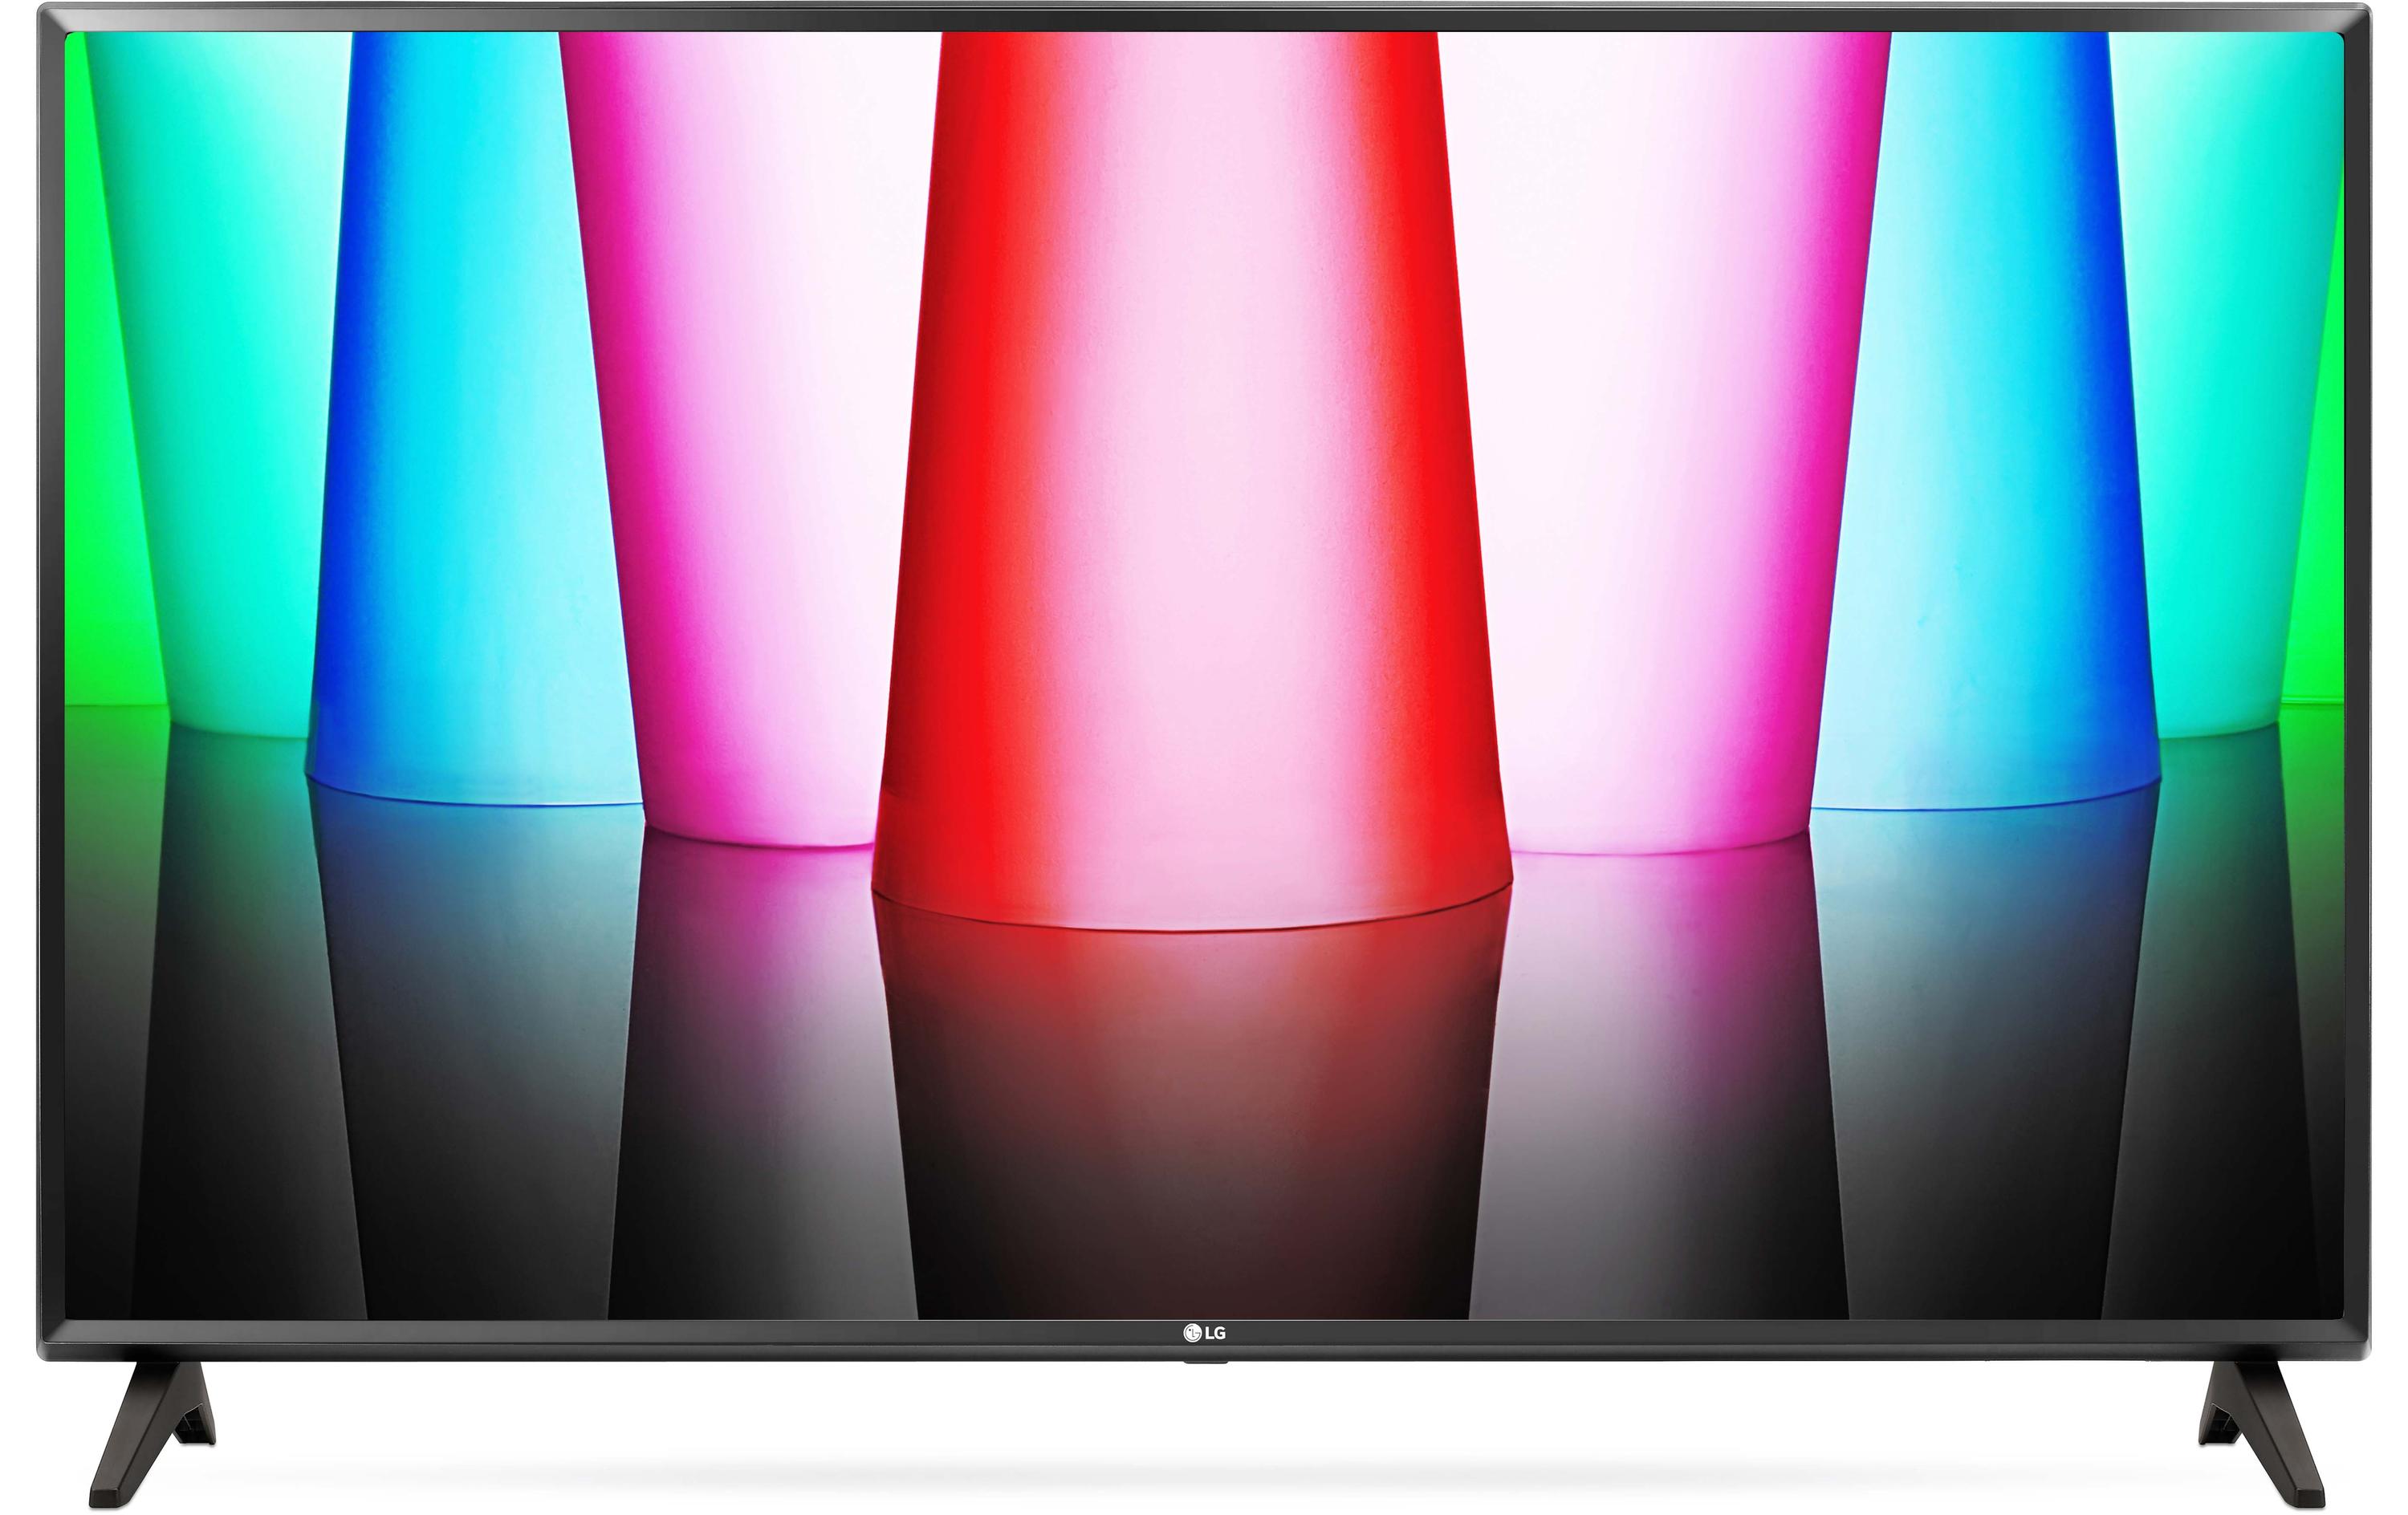 LG TV 32LQ570B6 32, 1920 x 1080 (Full HD), LED-LCD